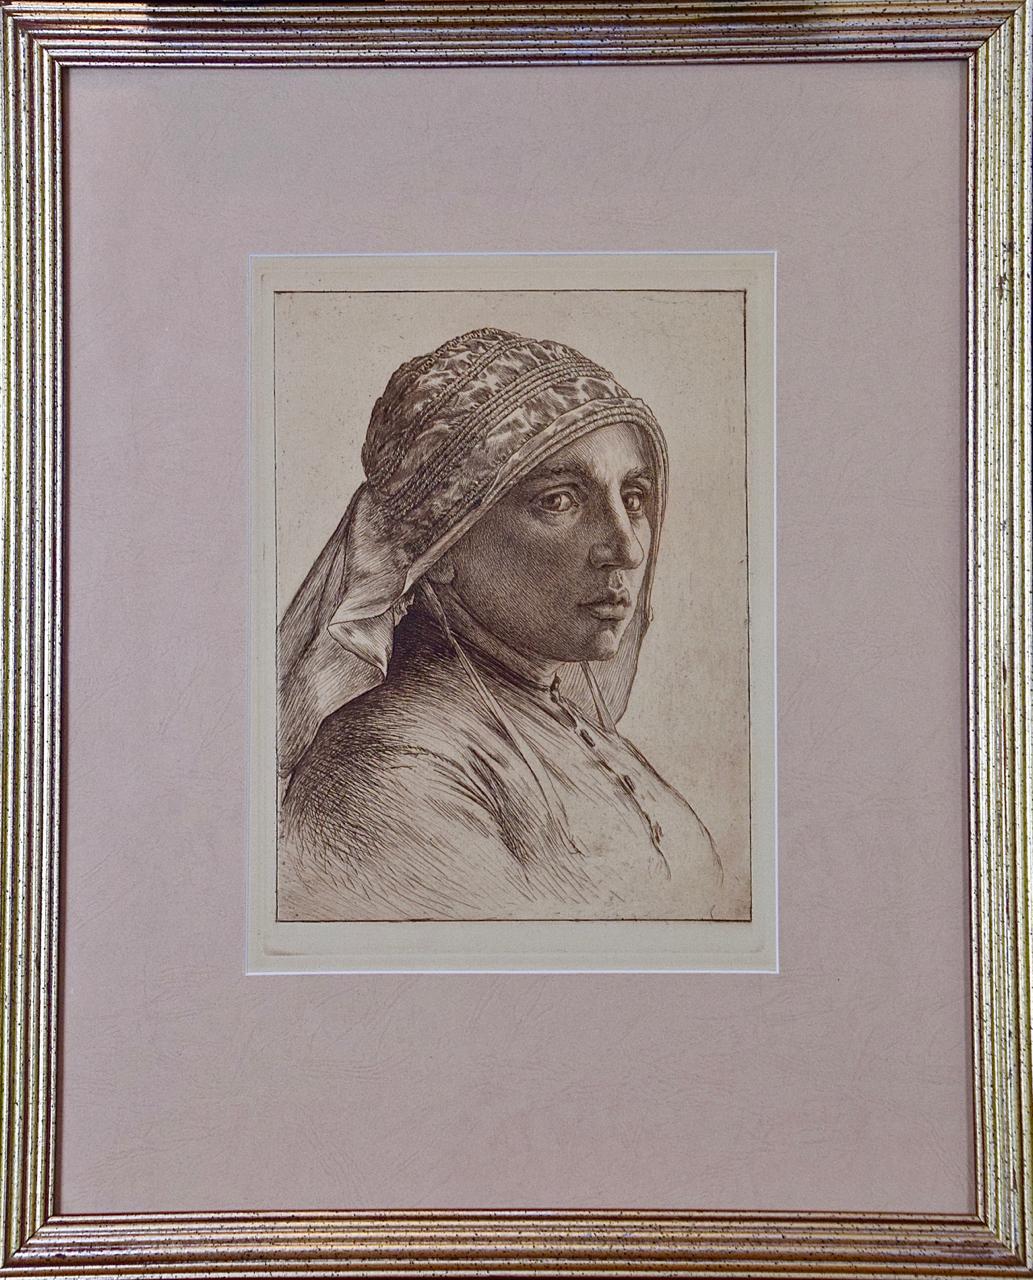 Un portrait d'une femme pensive dans une écharpe : une eau-forte de George Rhead